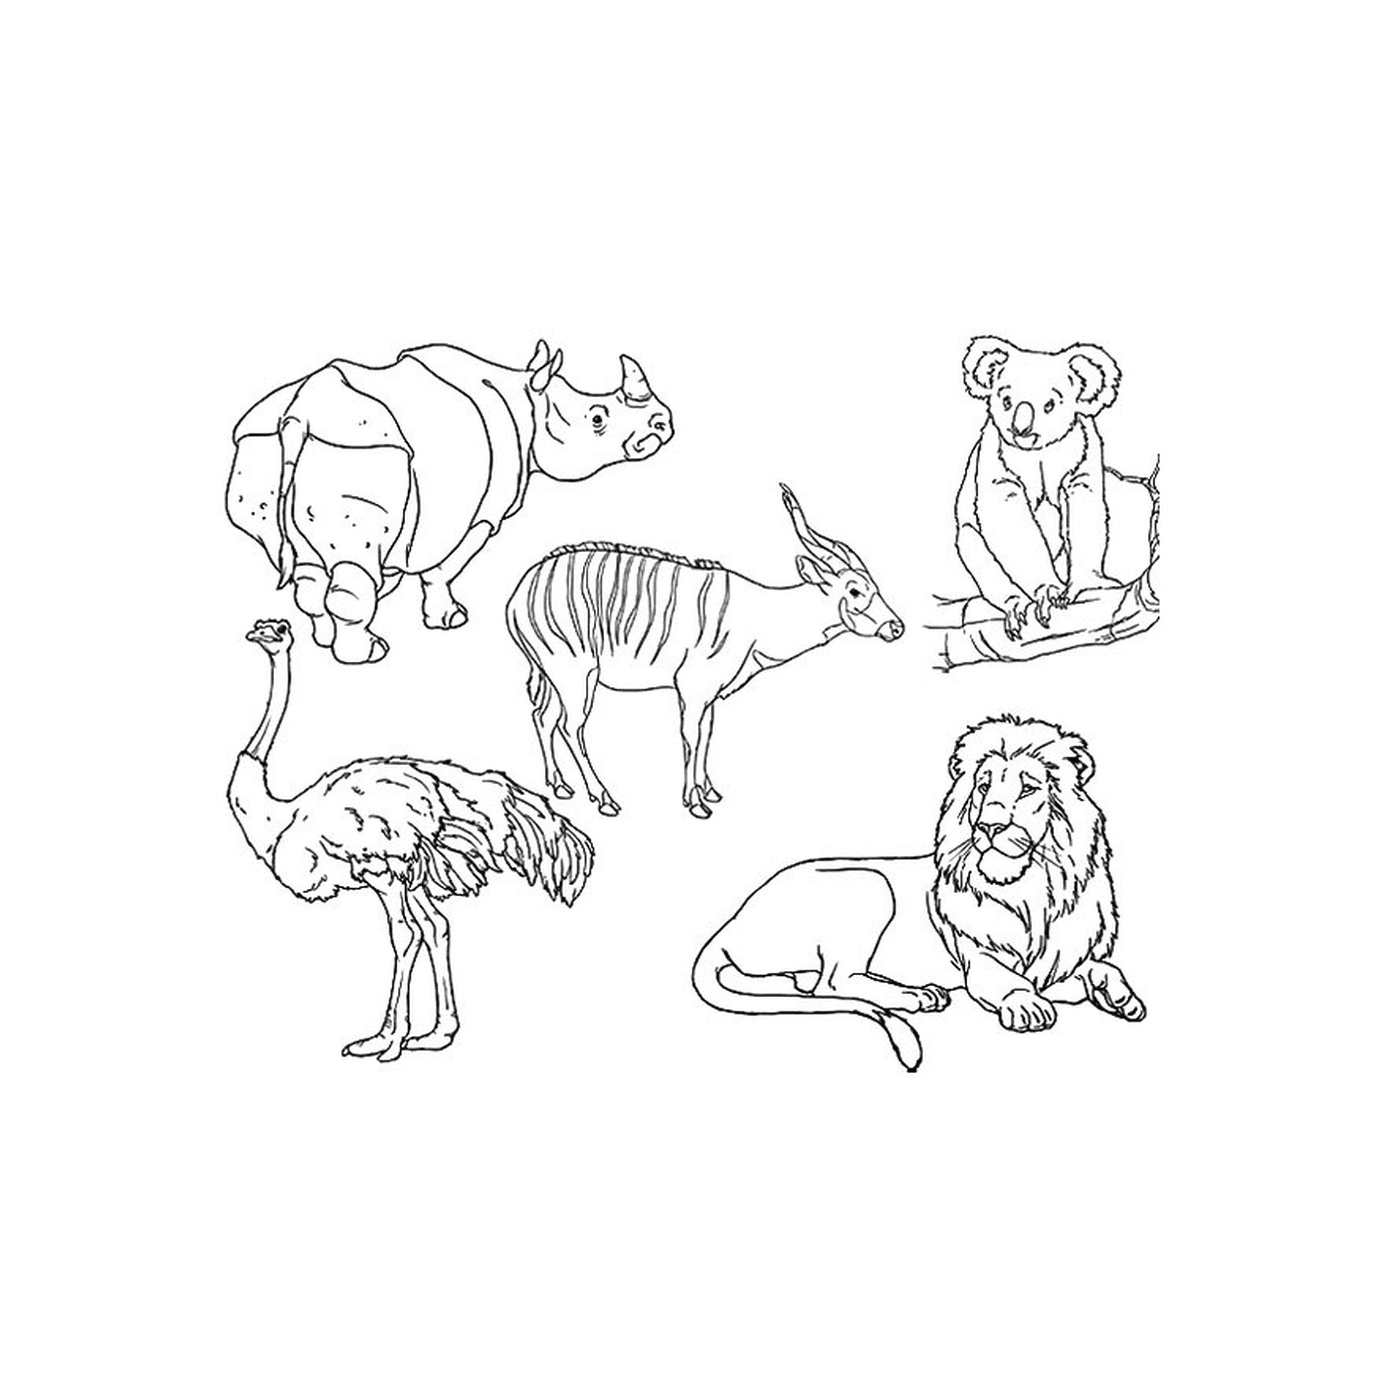  Группа животных нарисована 